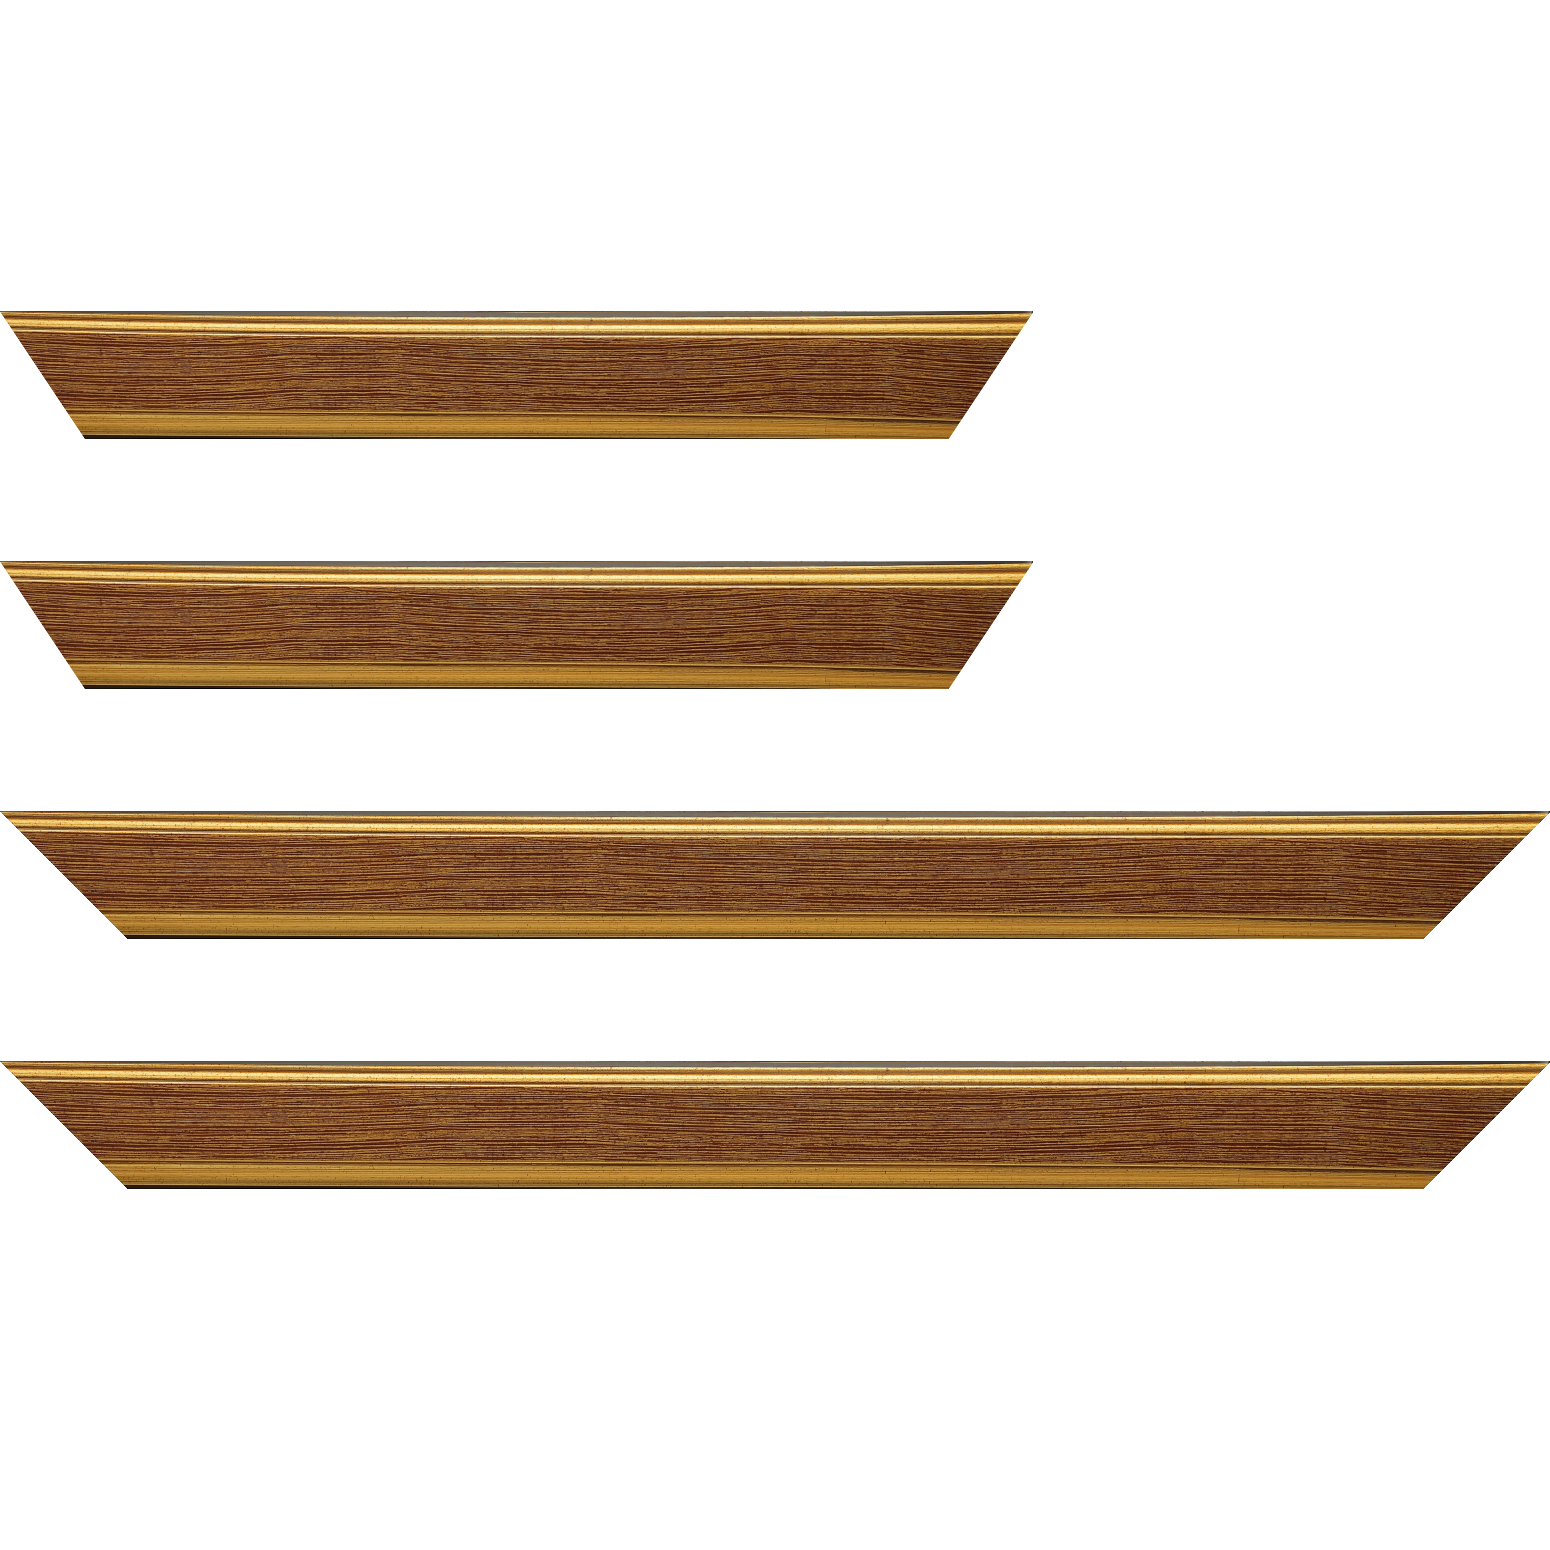 Baguette bois profil plat largeur 3.5cm couleur or fond bordeaux filet or - 24x30